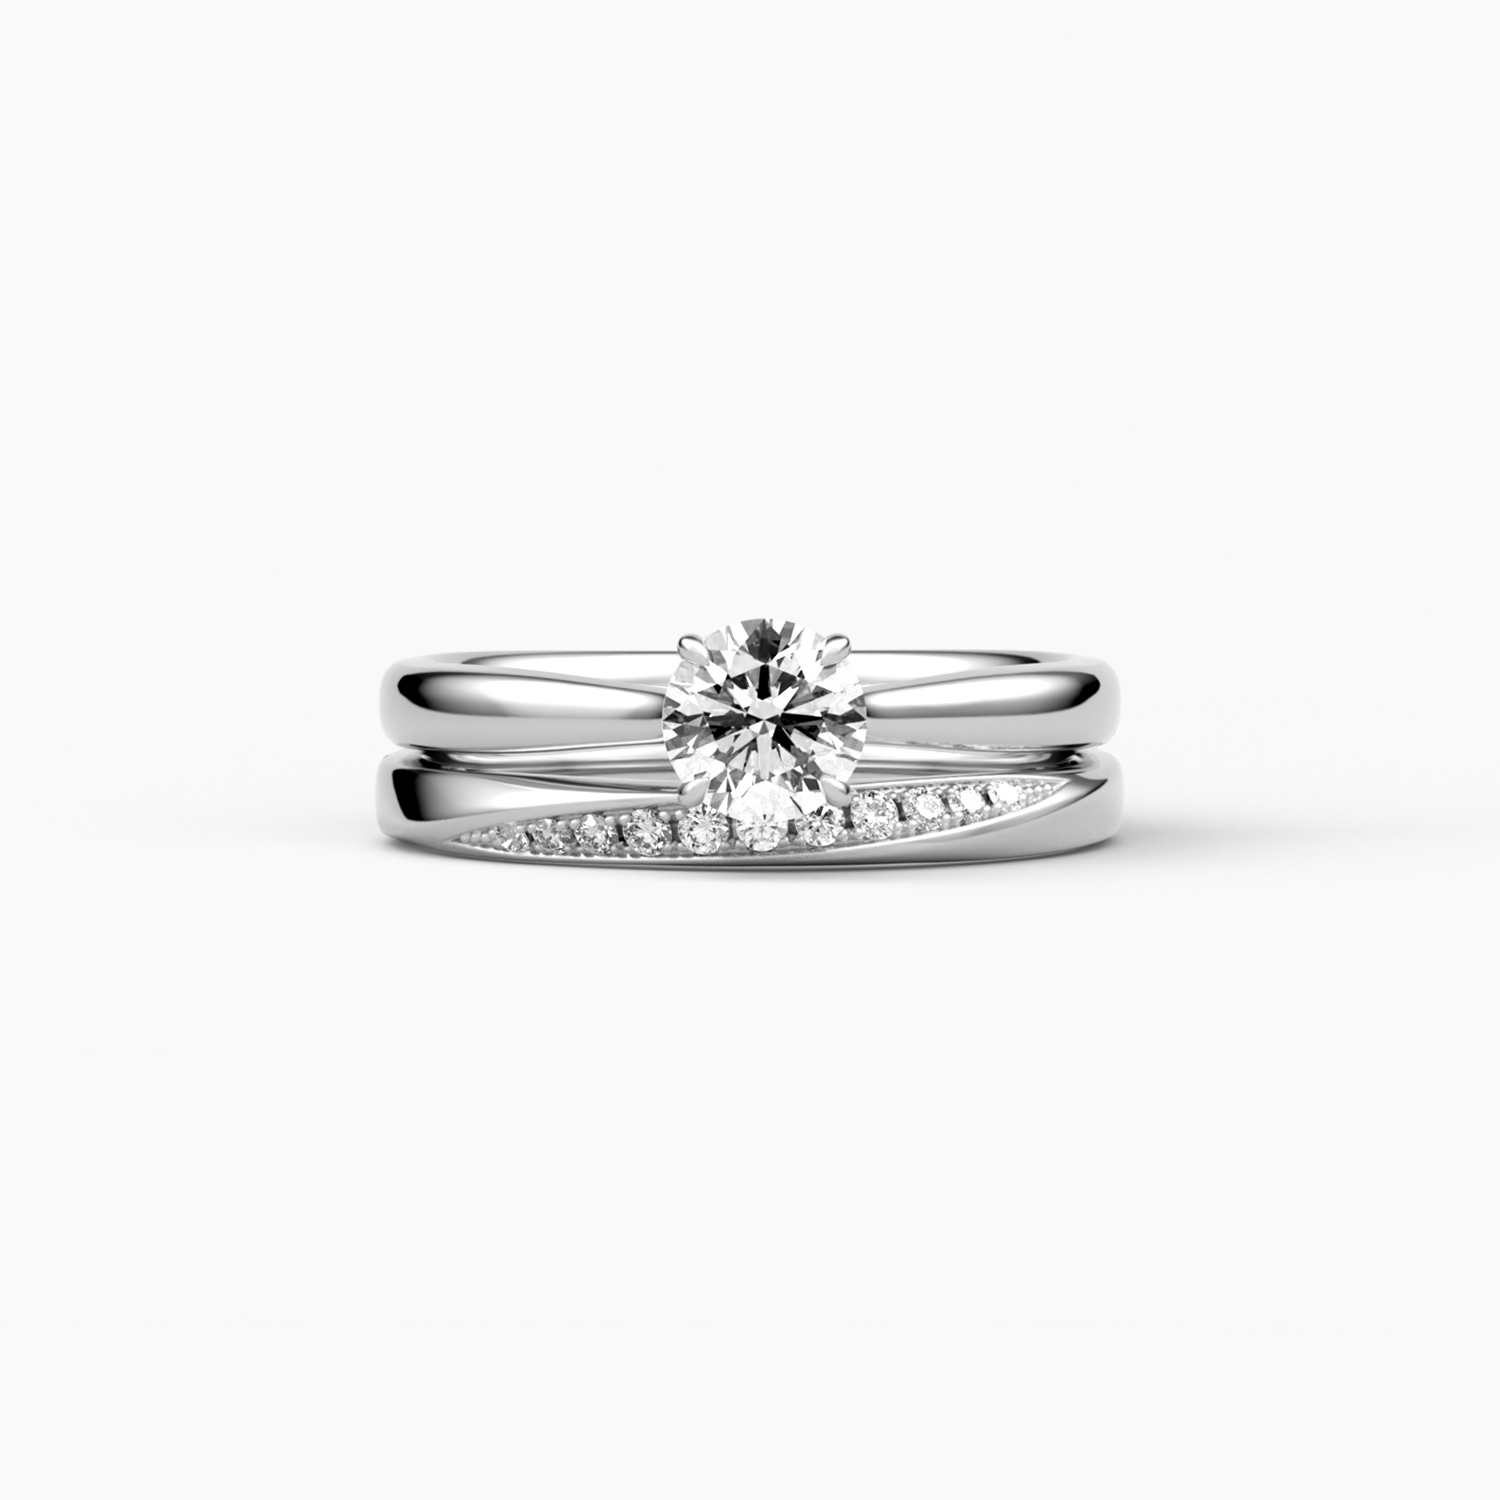 当店製作の婚約指輪と結婚指輪の重なった様子